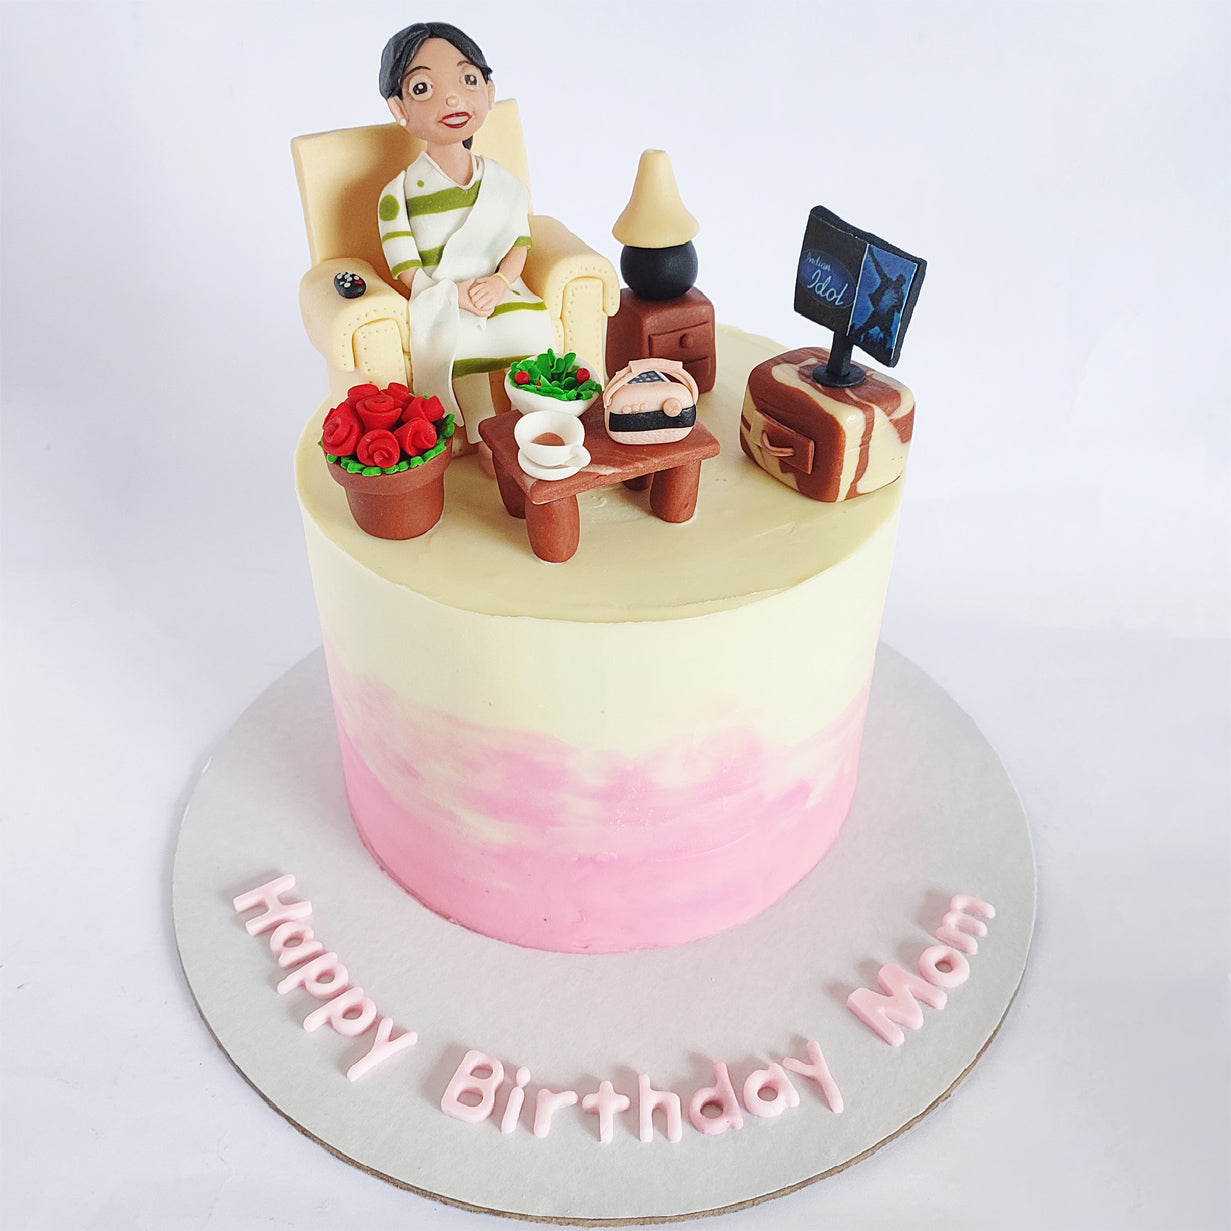 Super-mom theme cake !! - Decorated Cake by Sangeeta Roy - CakesDecor